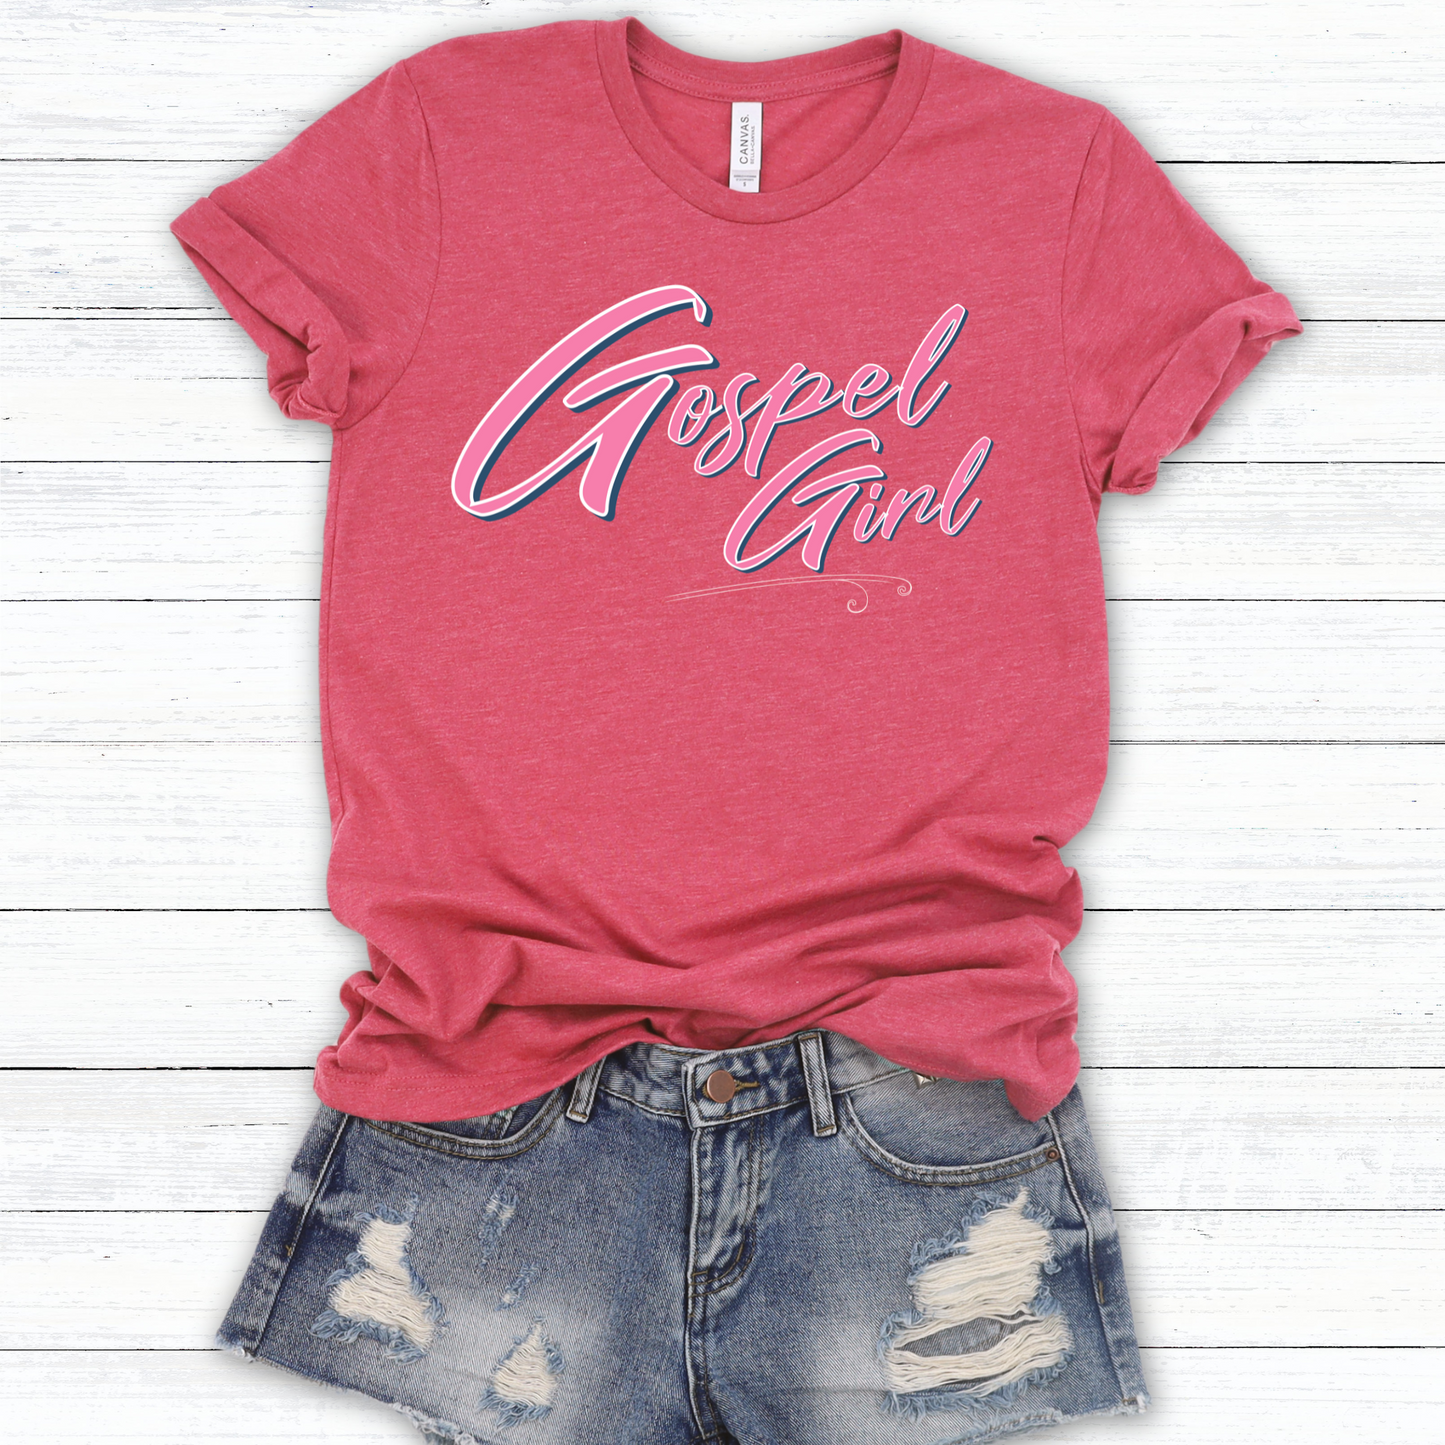 Gospel Girl